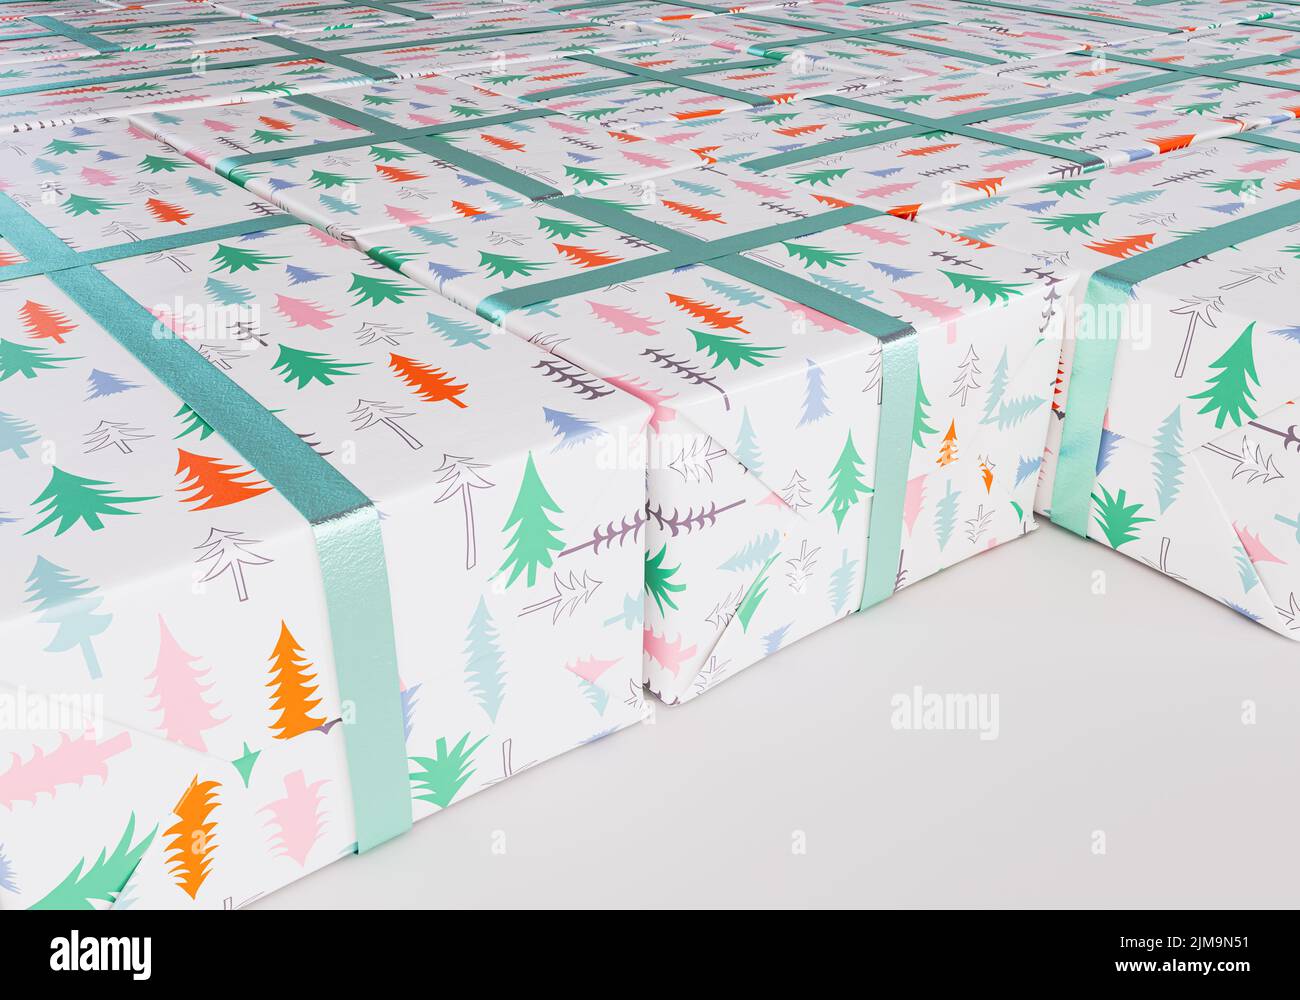 Una colección de cajas de regalo rectangulares de diferentes tamaños envueltas en papel de regalo de árbol de navidad con una cinta verde colocada plana sobre un espárrago aislado Foto de stock